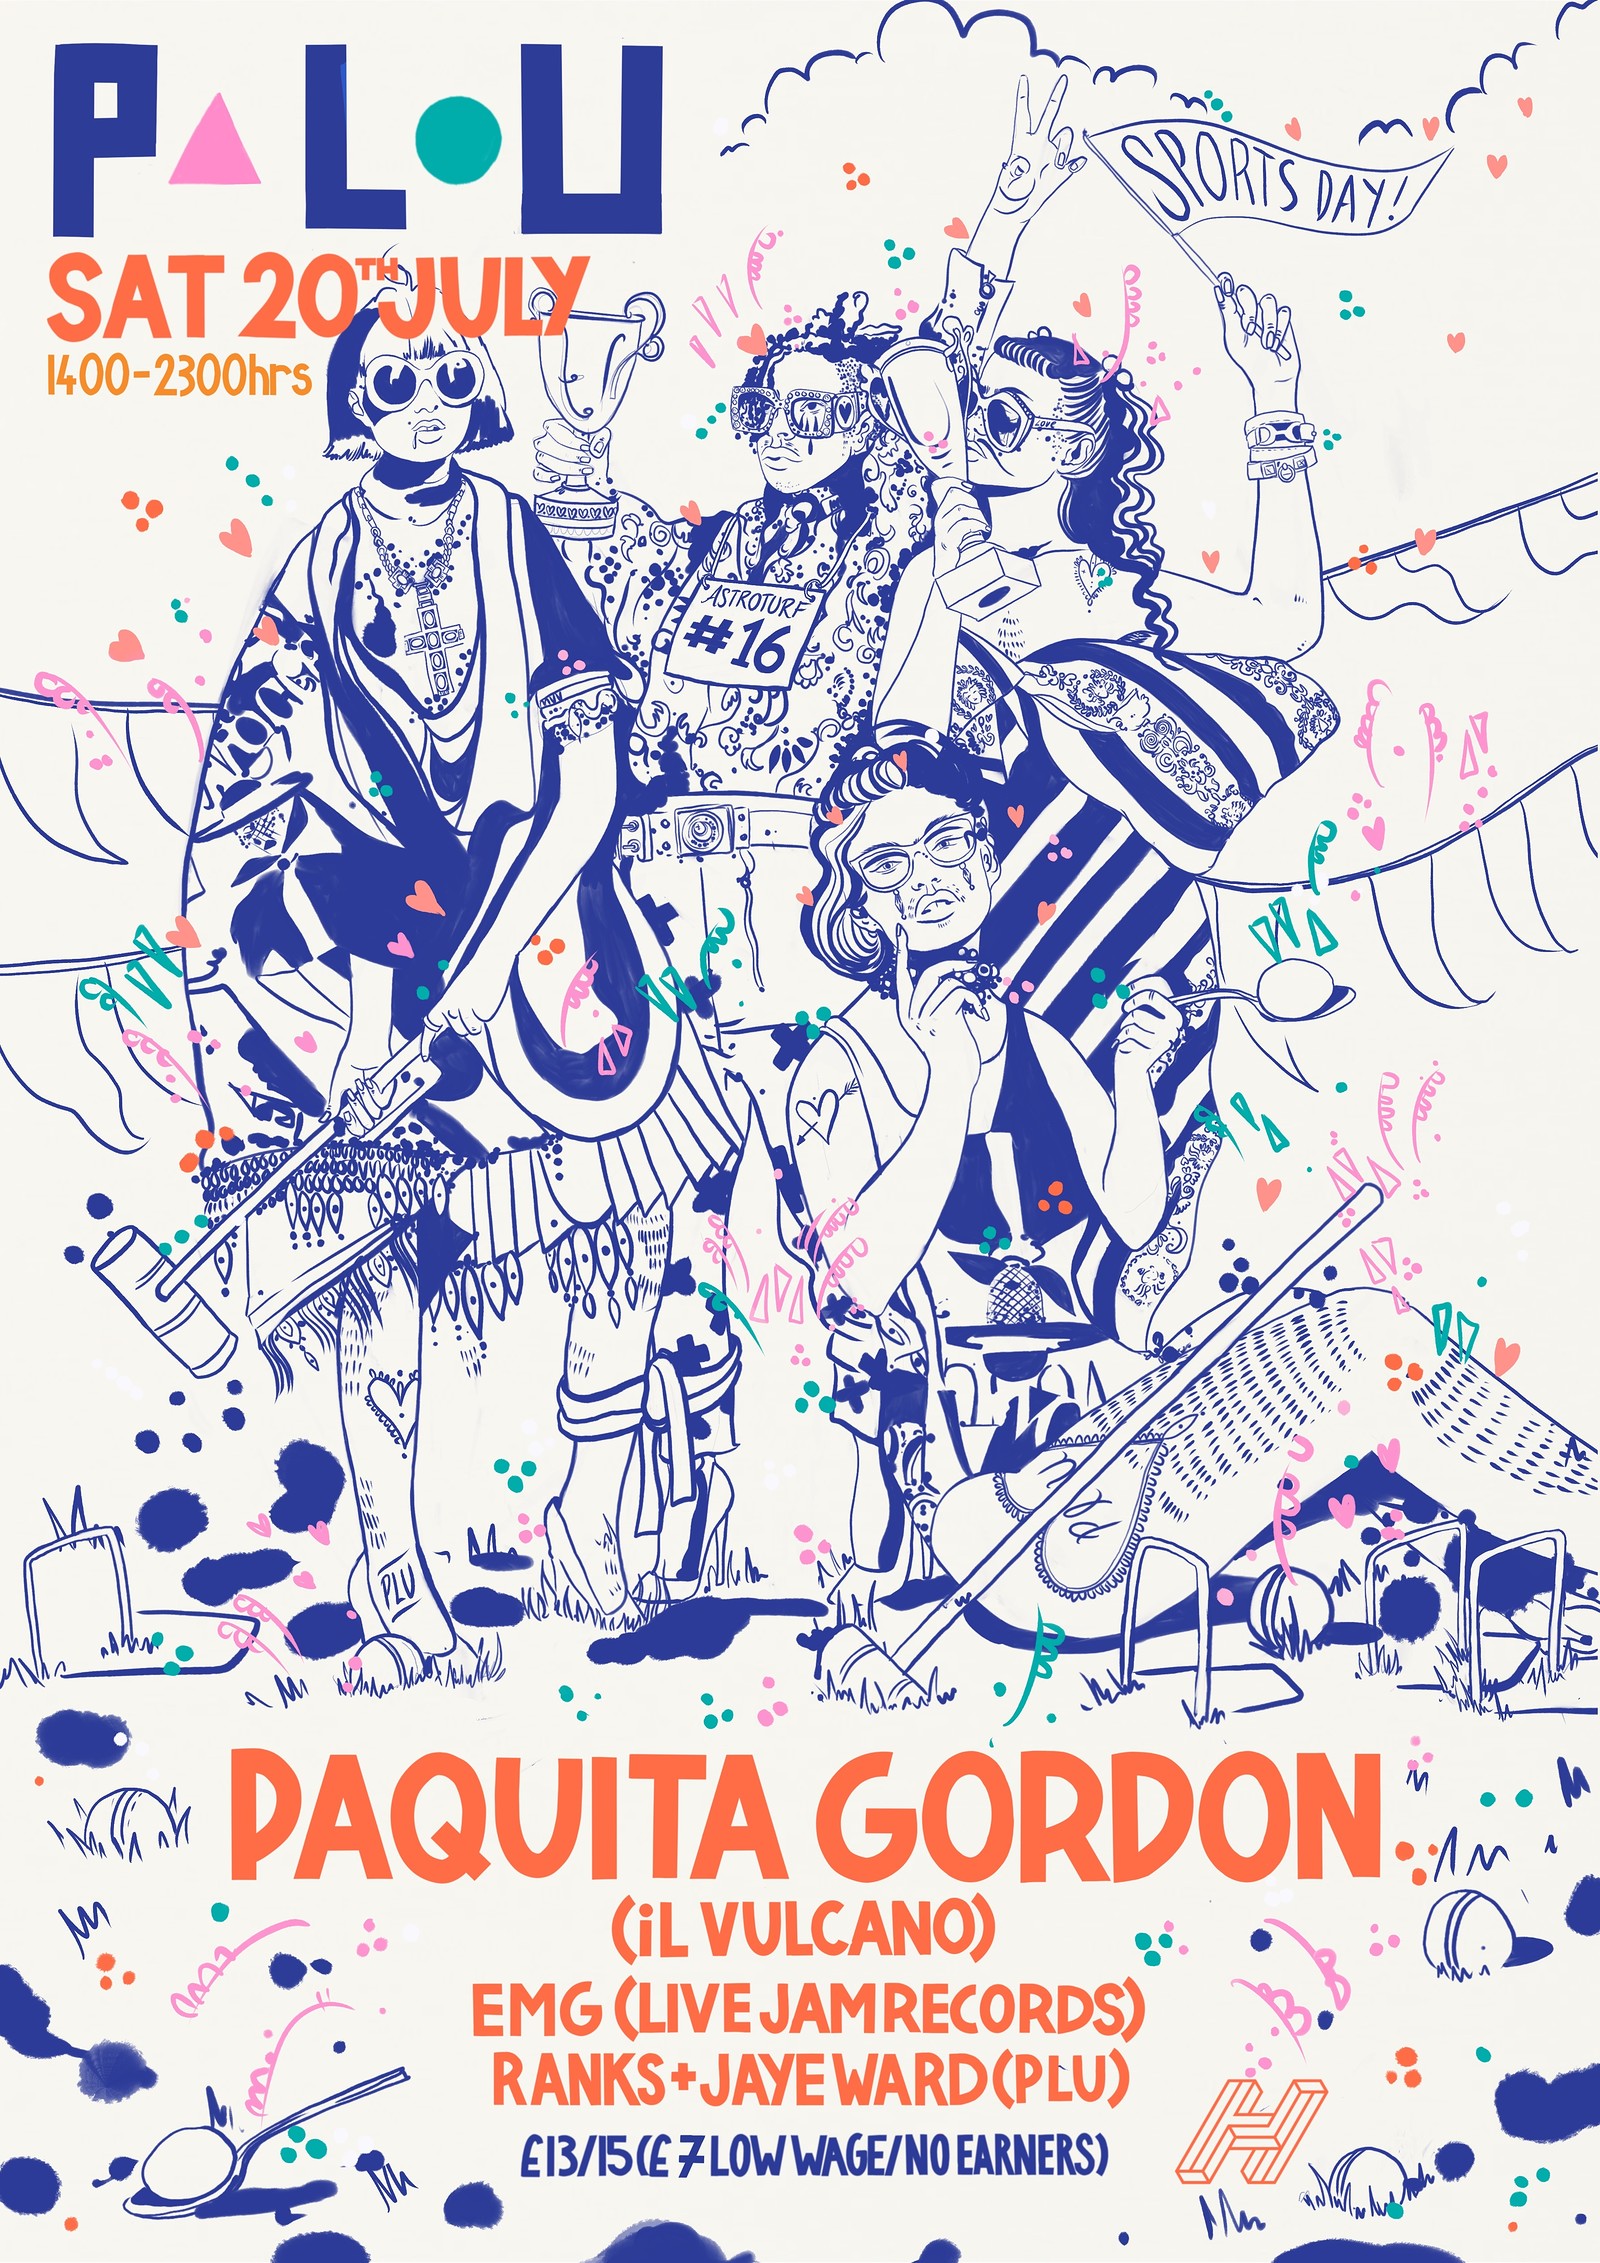 PLU AstroTurf #16 wt Paquita Gordon at TBA2